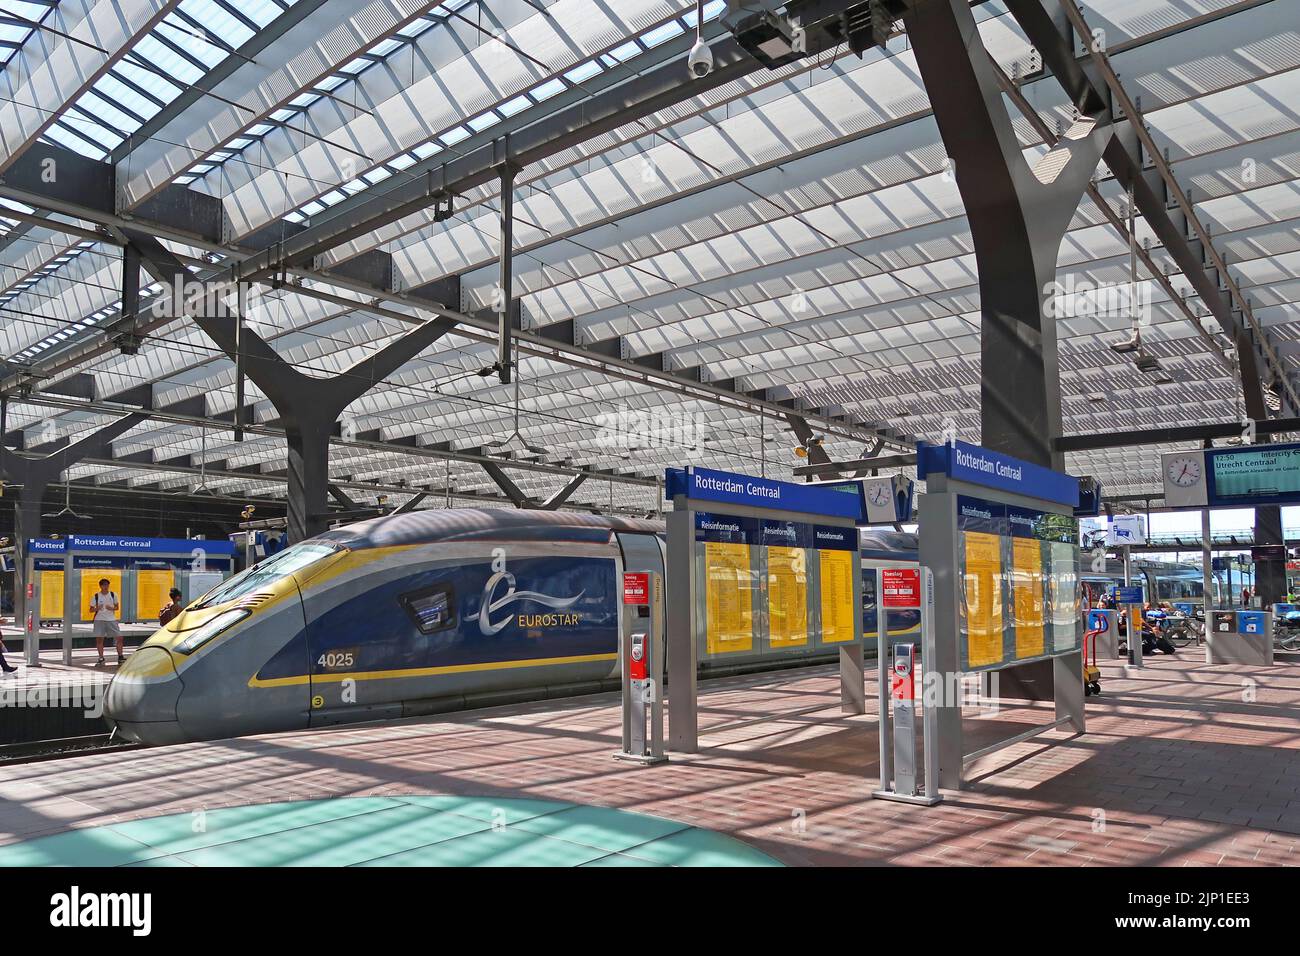 Un train Eurostar arrive à la gare centrale de Rotterdam, aux pays-Bas. Le service direct de Londres dessert Amsterdam via Bruxelles et Rotterdam. Banque D'Images